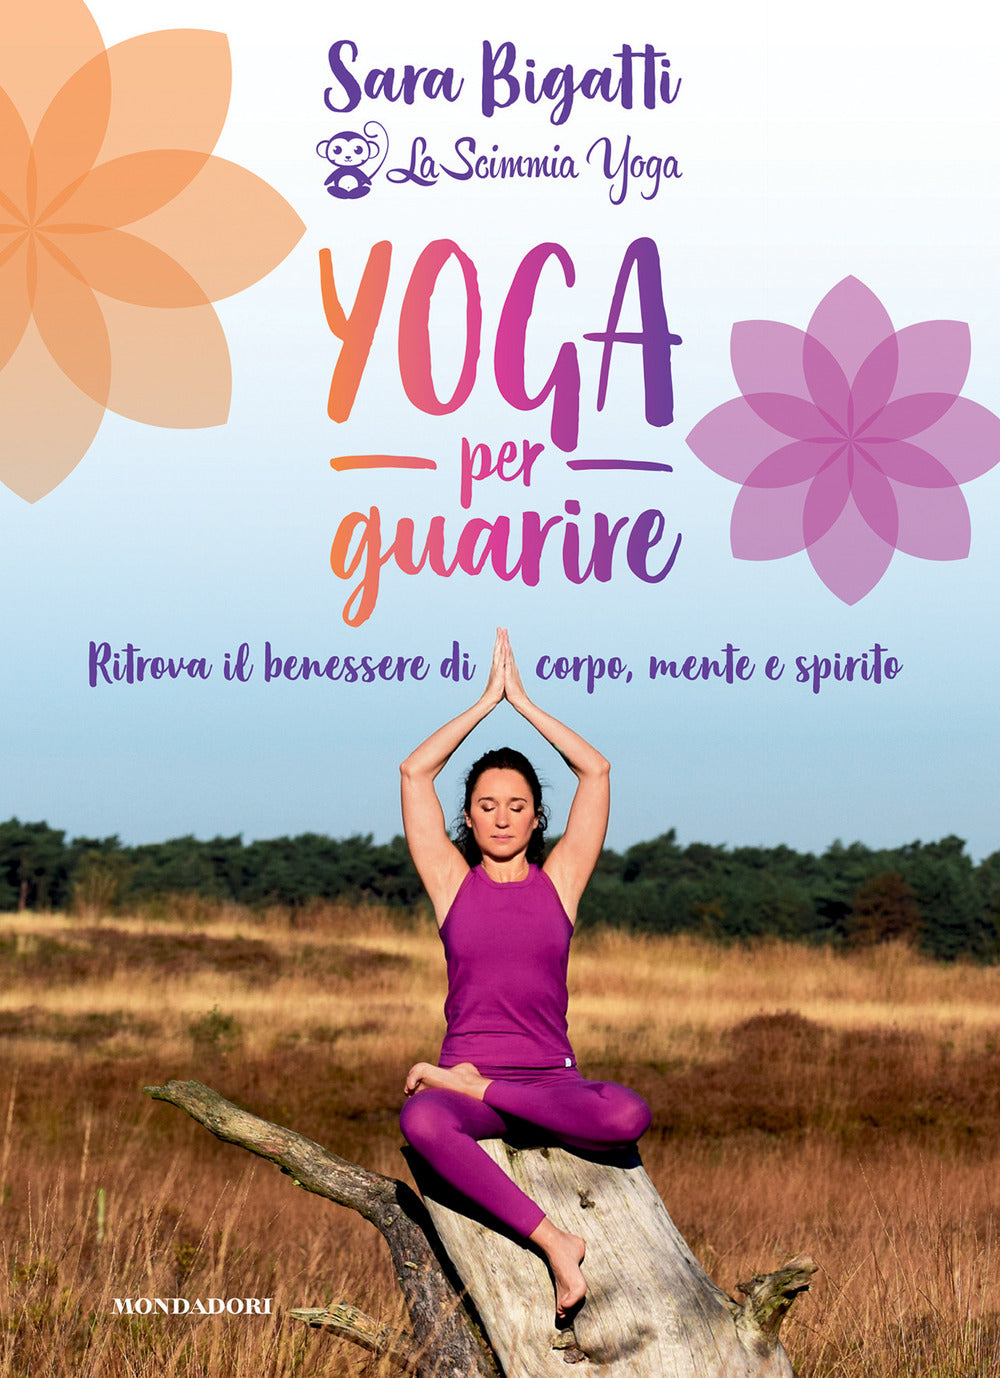 Yoga per guarire. Ritrova il benessere di corpo, mente e spirito.